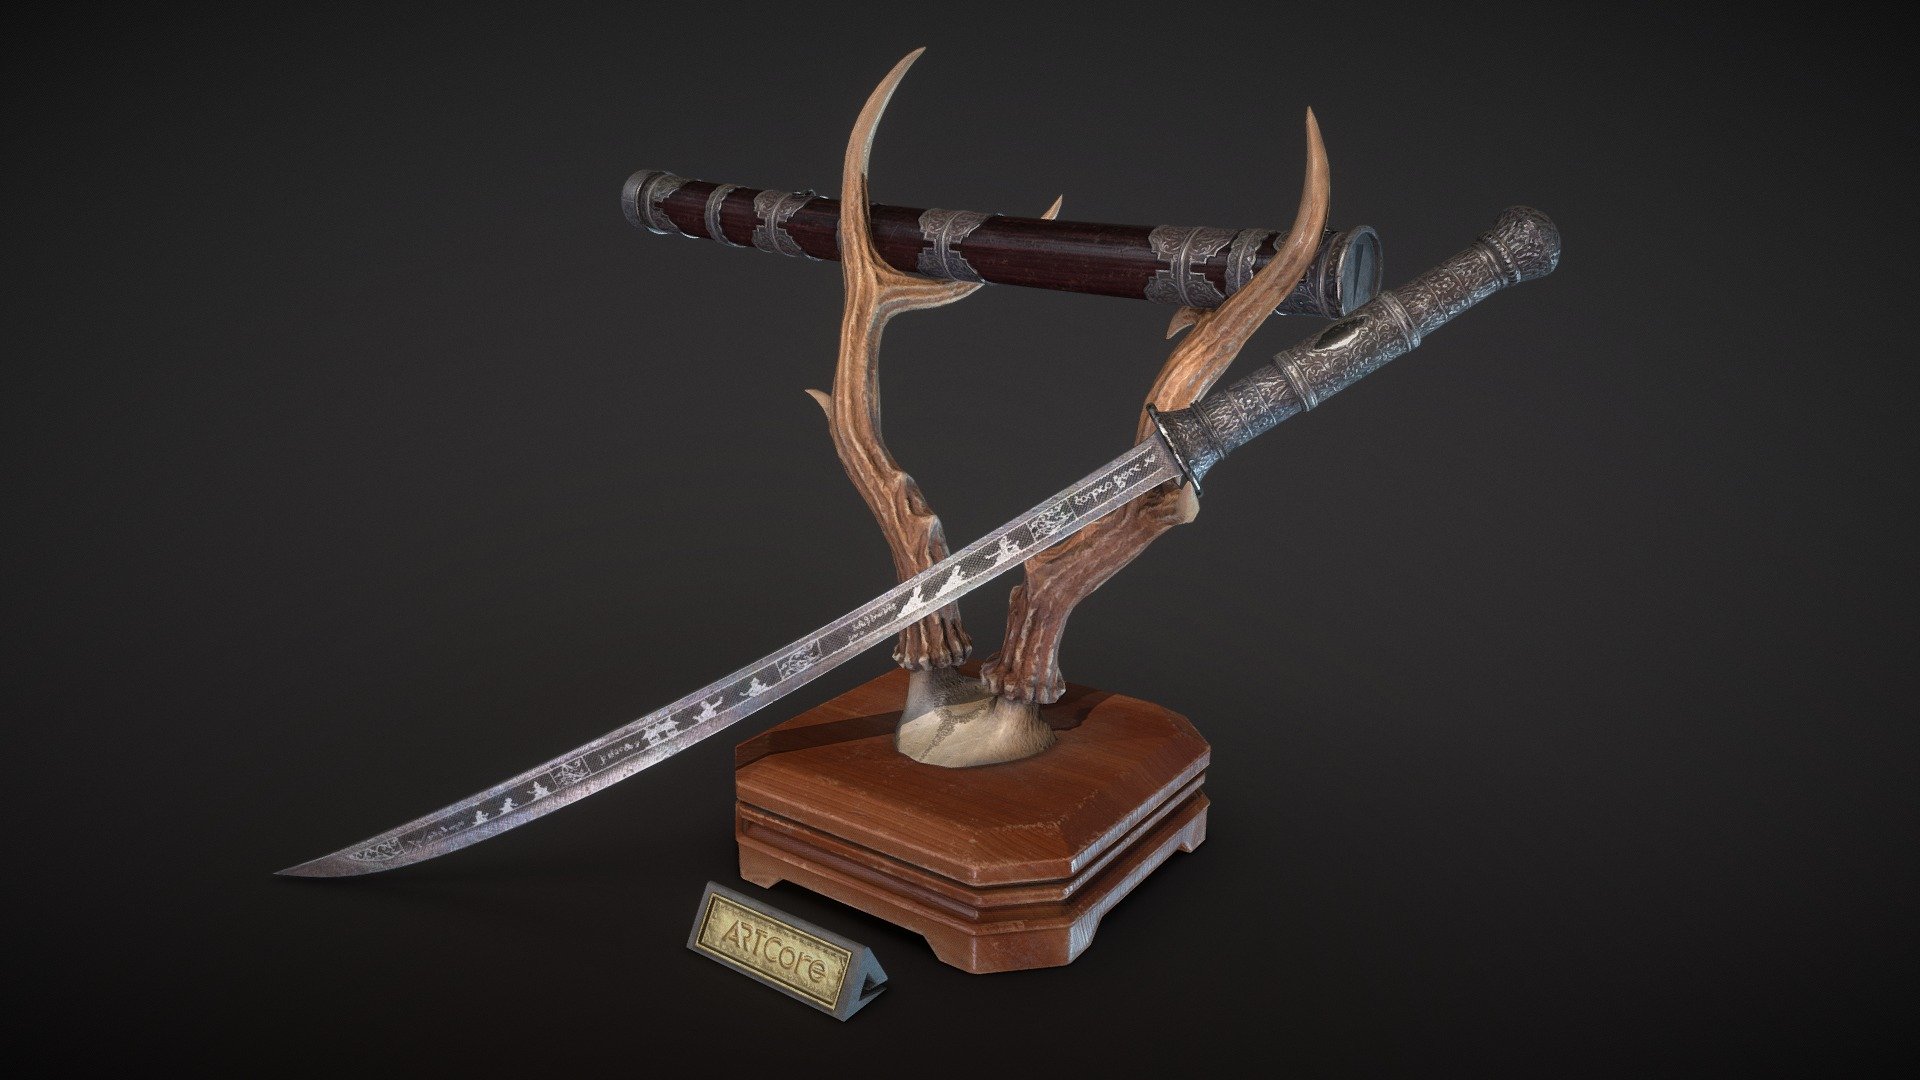 緬刀是世界十大名刃之一，不管是刀身還是刀鞘都有著精美的裝飾與紋樣，是一件華麗無比的武器。

The Burmese Dha Sword is one of the top 10 famous Sword in the world. Both the blade and the scabbard have exquisite decorations and patterns, it is a gorgeous weapon.



- - -



👇Next-Generation PBR 3D Model Online Course 線上課程👇

https://www.artcore.cc/Mby7J

課程將使用現今市場主流的3D軟體，完整講解次世代模型的製作流程，

也藉此介紹如何將參考圖中的細緻雕紋擷取、製成Alpha轉貼到模型上。



- - -



ARTcore 阿特學院│最專業的數位美術教學平台

🎨原畫 / 遊戲 / 動畫 / 影視 / 特效🎨 現學現賣



Facebook 👉 https://fb.com/artcore.com.tw

Instagram 👉https://www.instagram.com/artcore_tw

Youtube 👉https://www.artcore.cc/youtube

ArtStation 👉 https://artstation.com/artcore_artcore
 - 緬刀 Burmese Dha Sword (Game/Weapons) - 3D model by ARTCore 阿特學院 (@artcore) 3d model